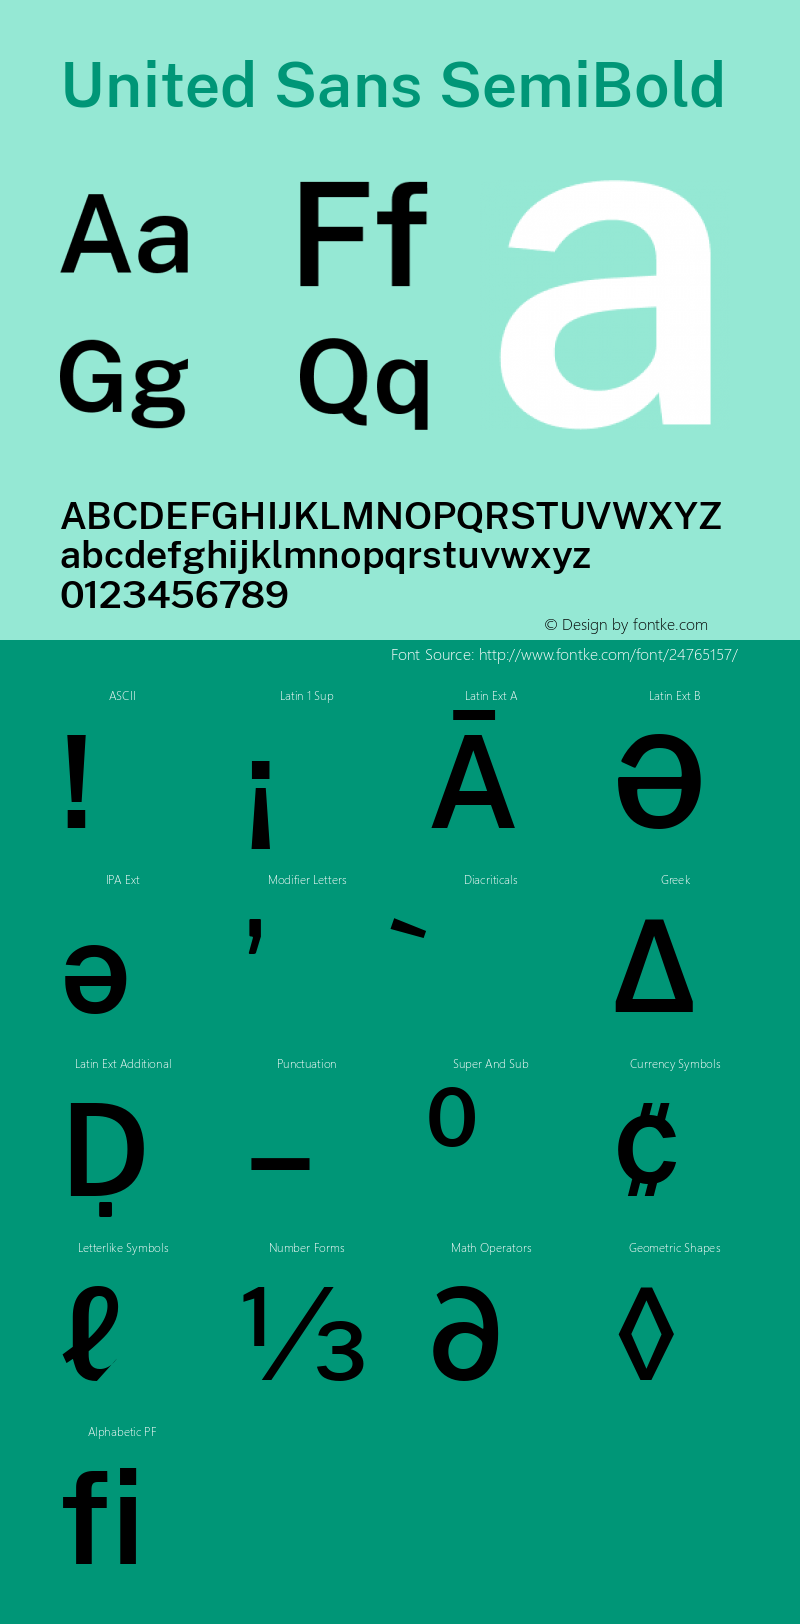 United Sans SemiBold Version 1.000 Font Sample